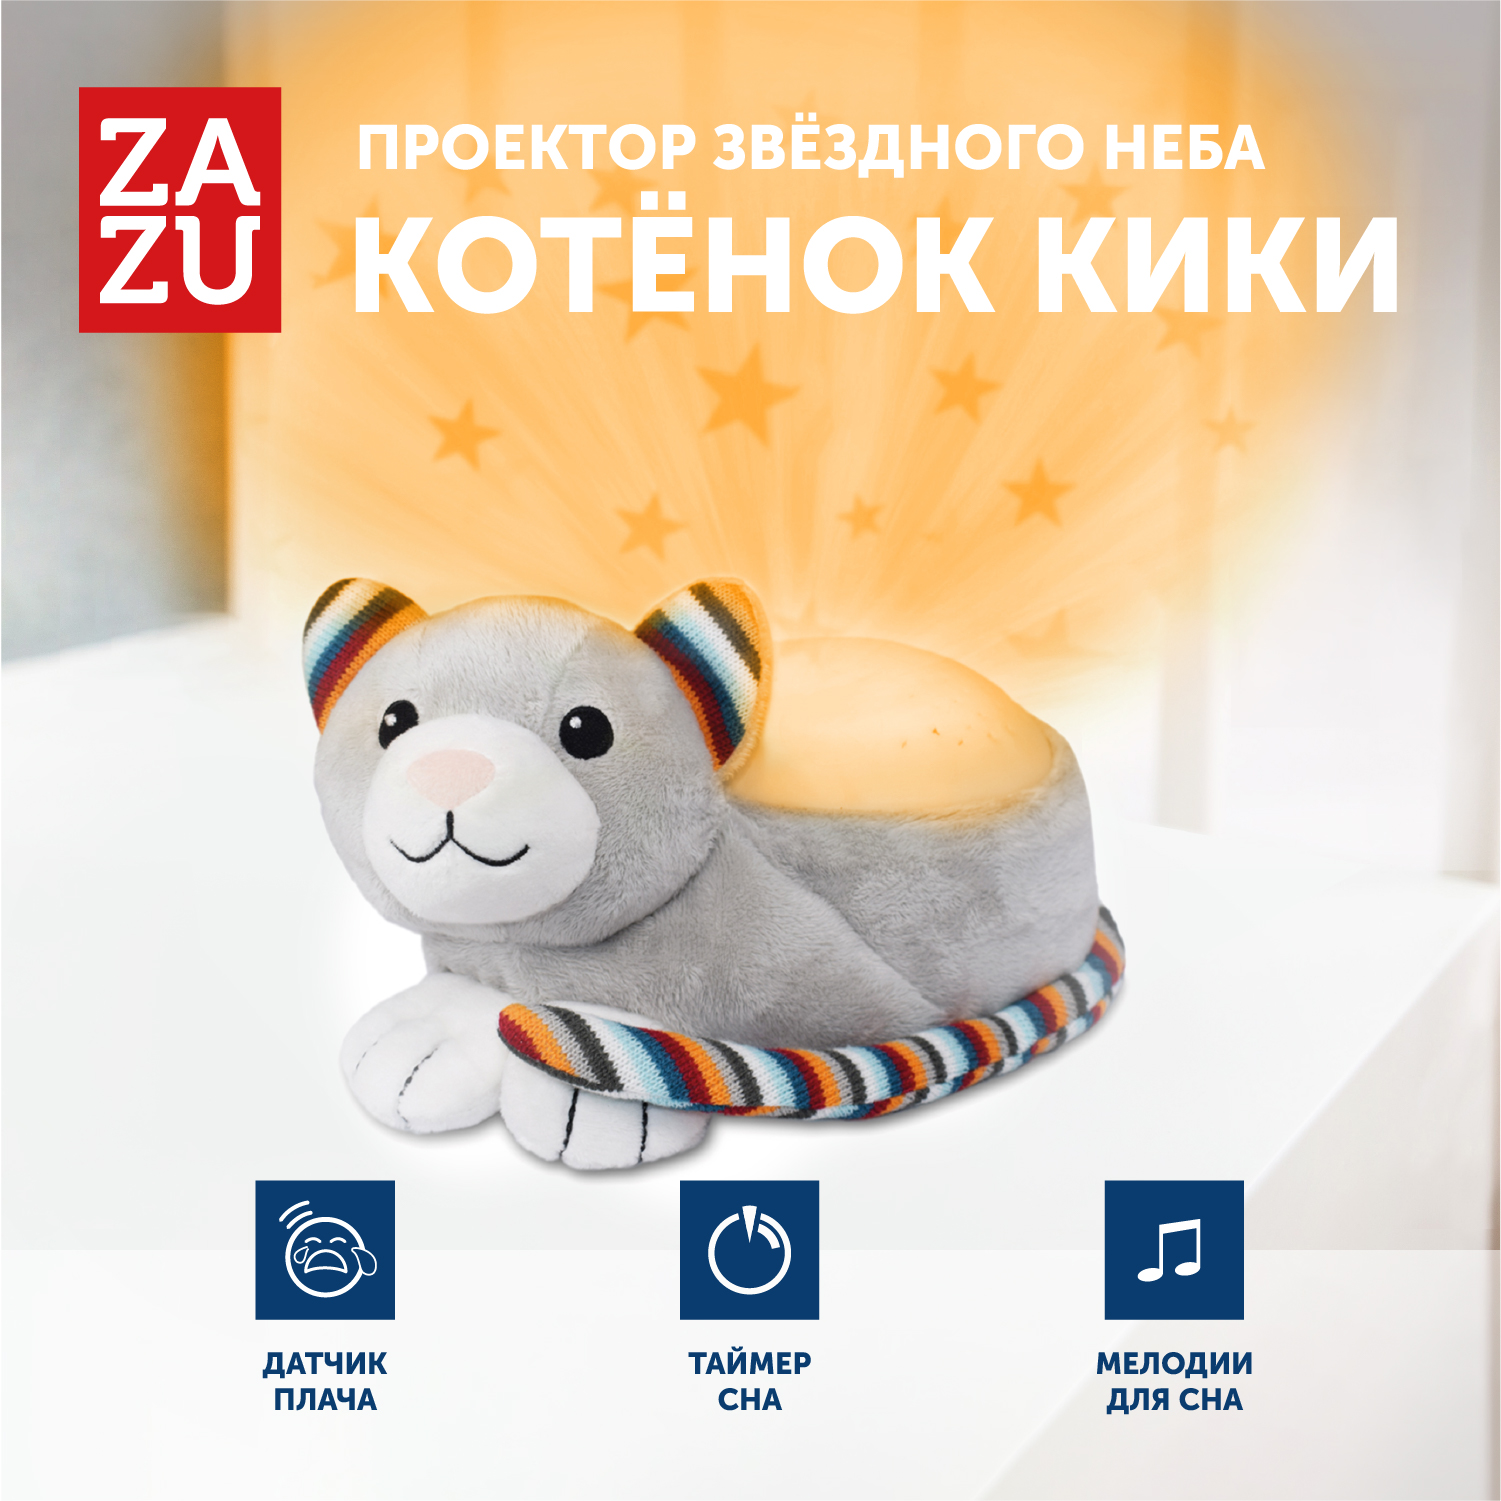 Музыкальная мягкая игрушка проектор ZAZU Котёнок Кики для малышей